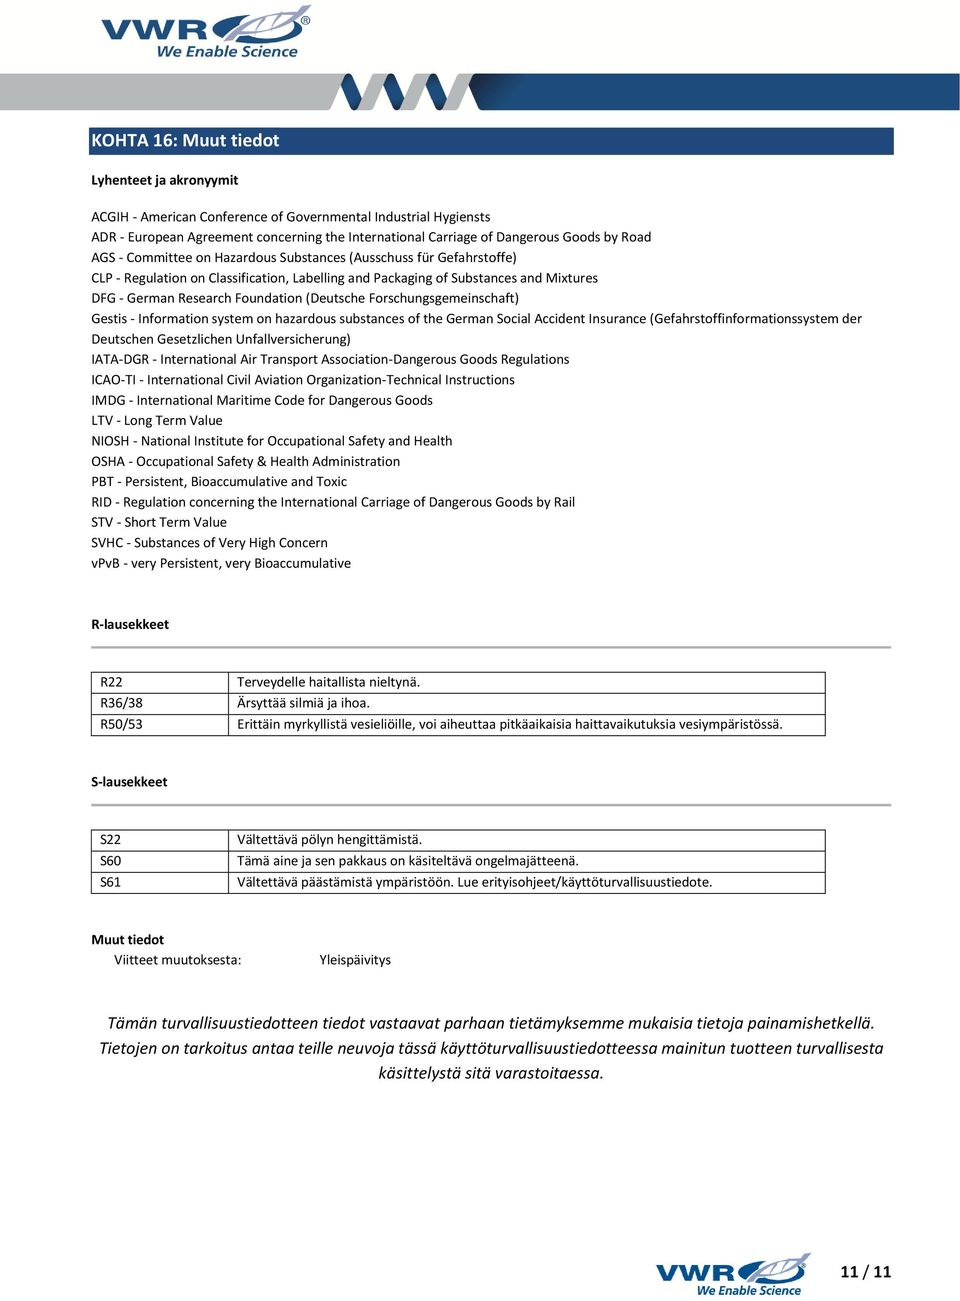 (Deutsche Forschungsgemeinschaft) Gestis - Information system on hazardous substances of the German Social Accident Insurance (Gefahrstoffinformationssystem der Deutschen Gesetzlichen